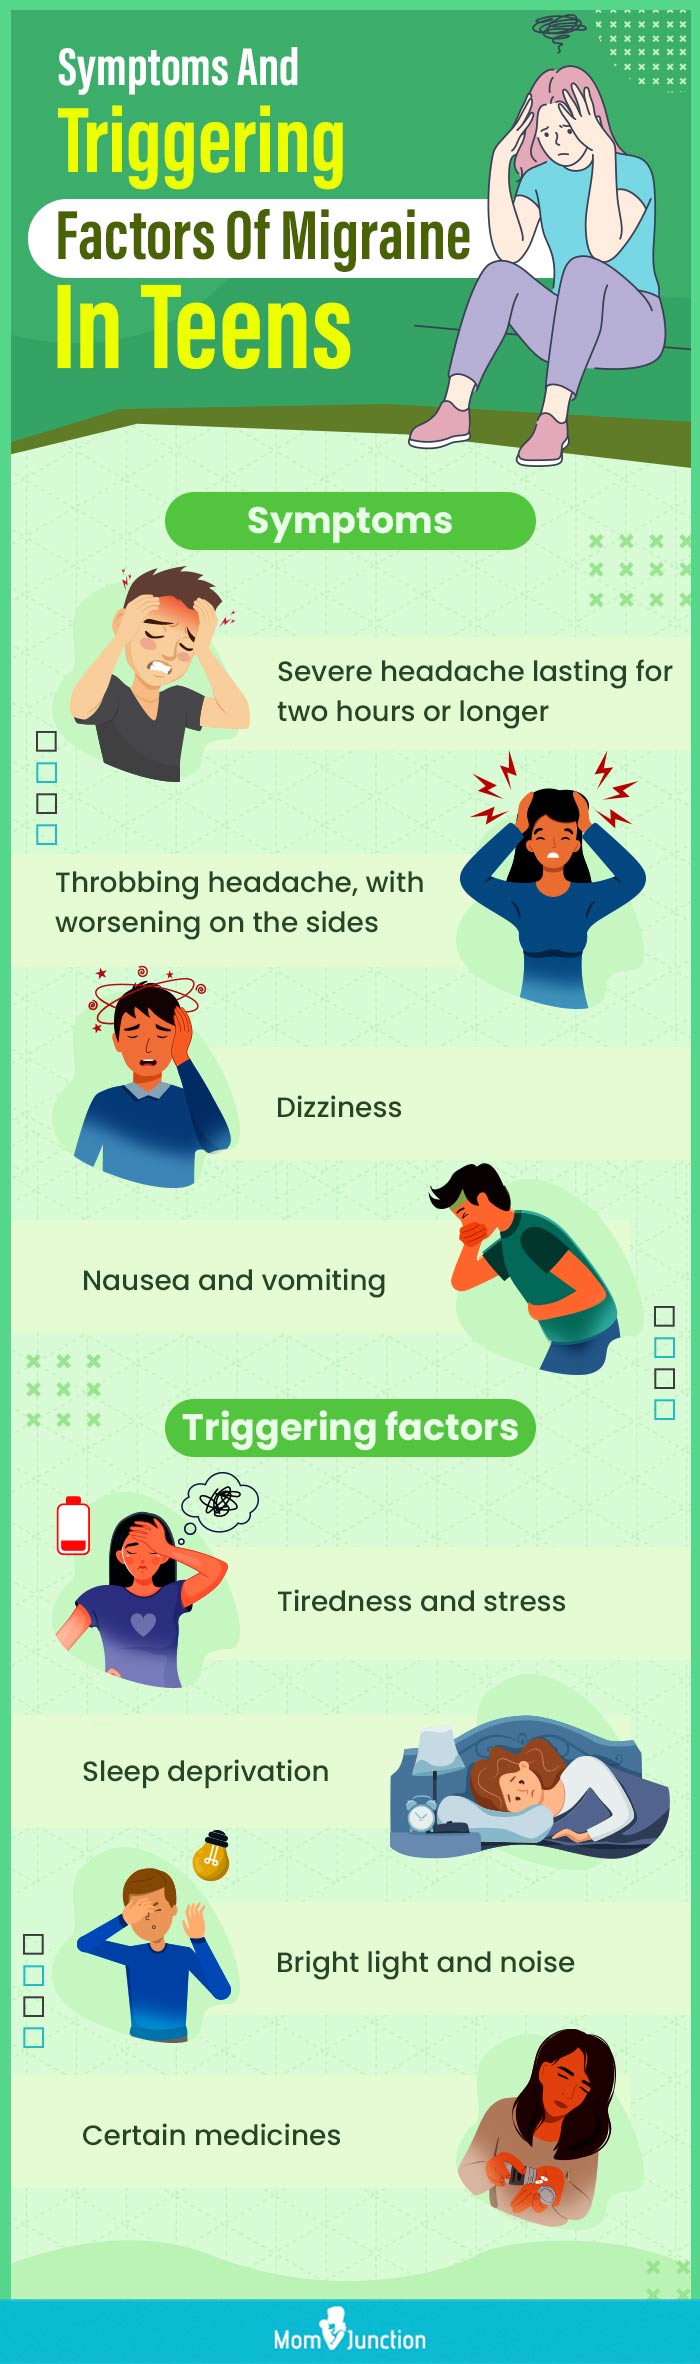 青少年偏头痛的症状和诱发因素(信息图)